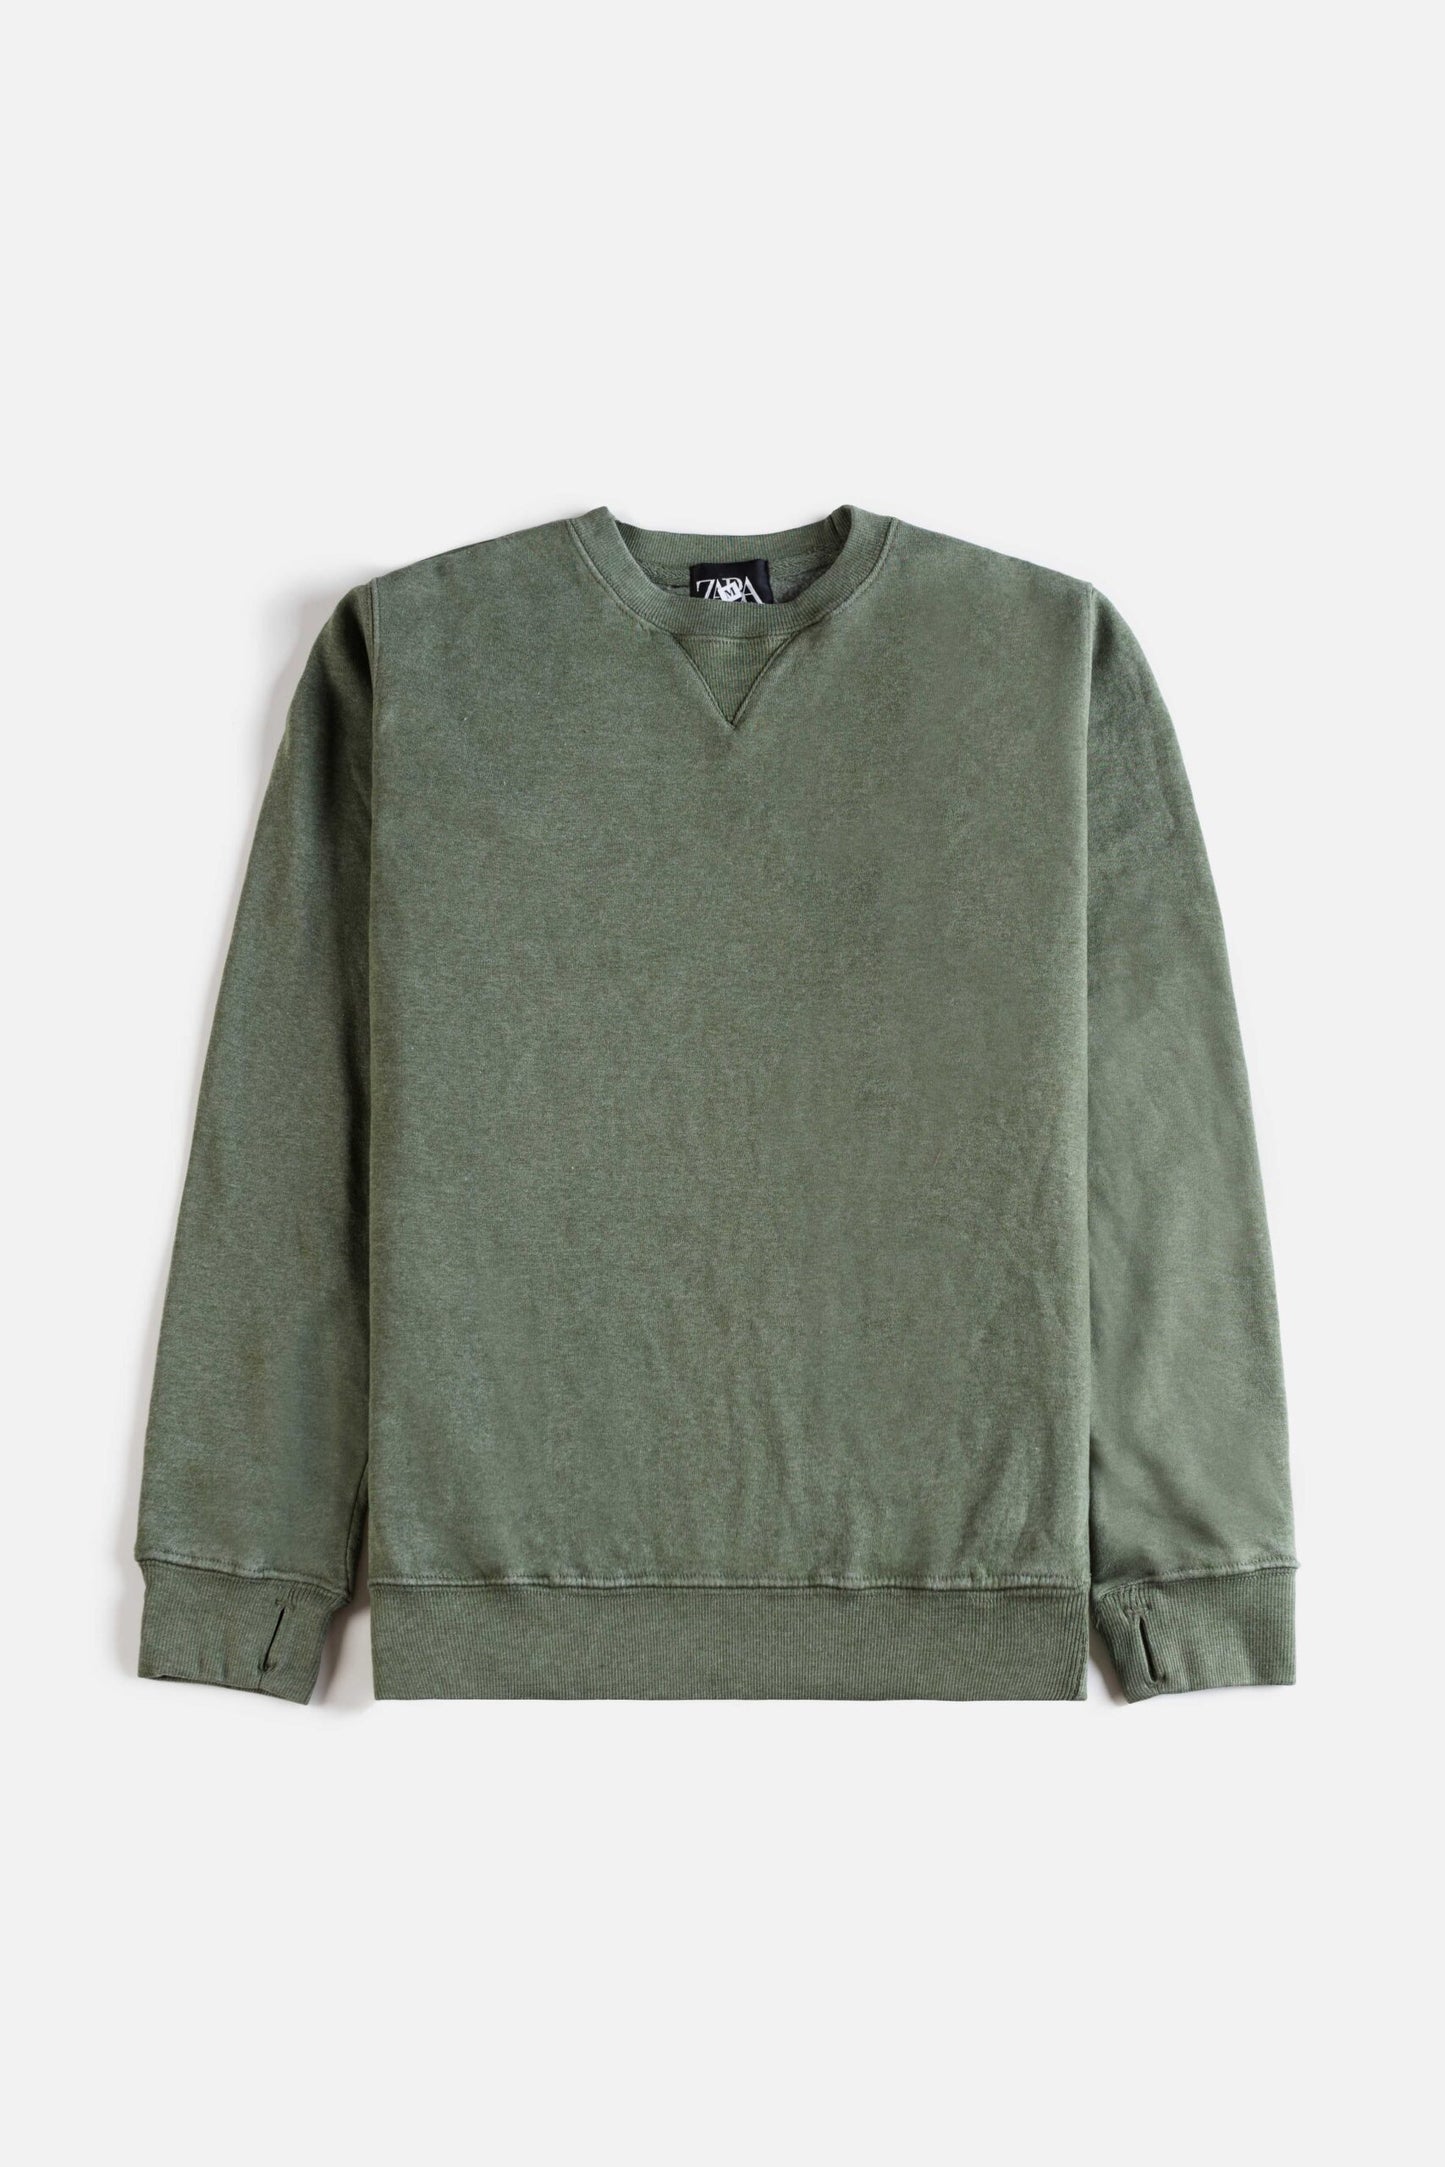 ZR Premium Fleece Sweatshirt – Green